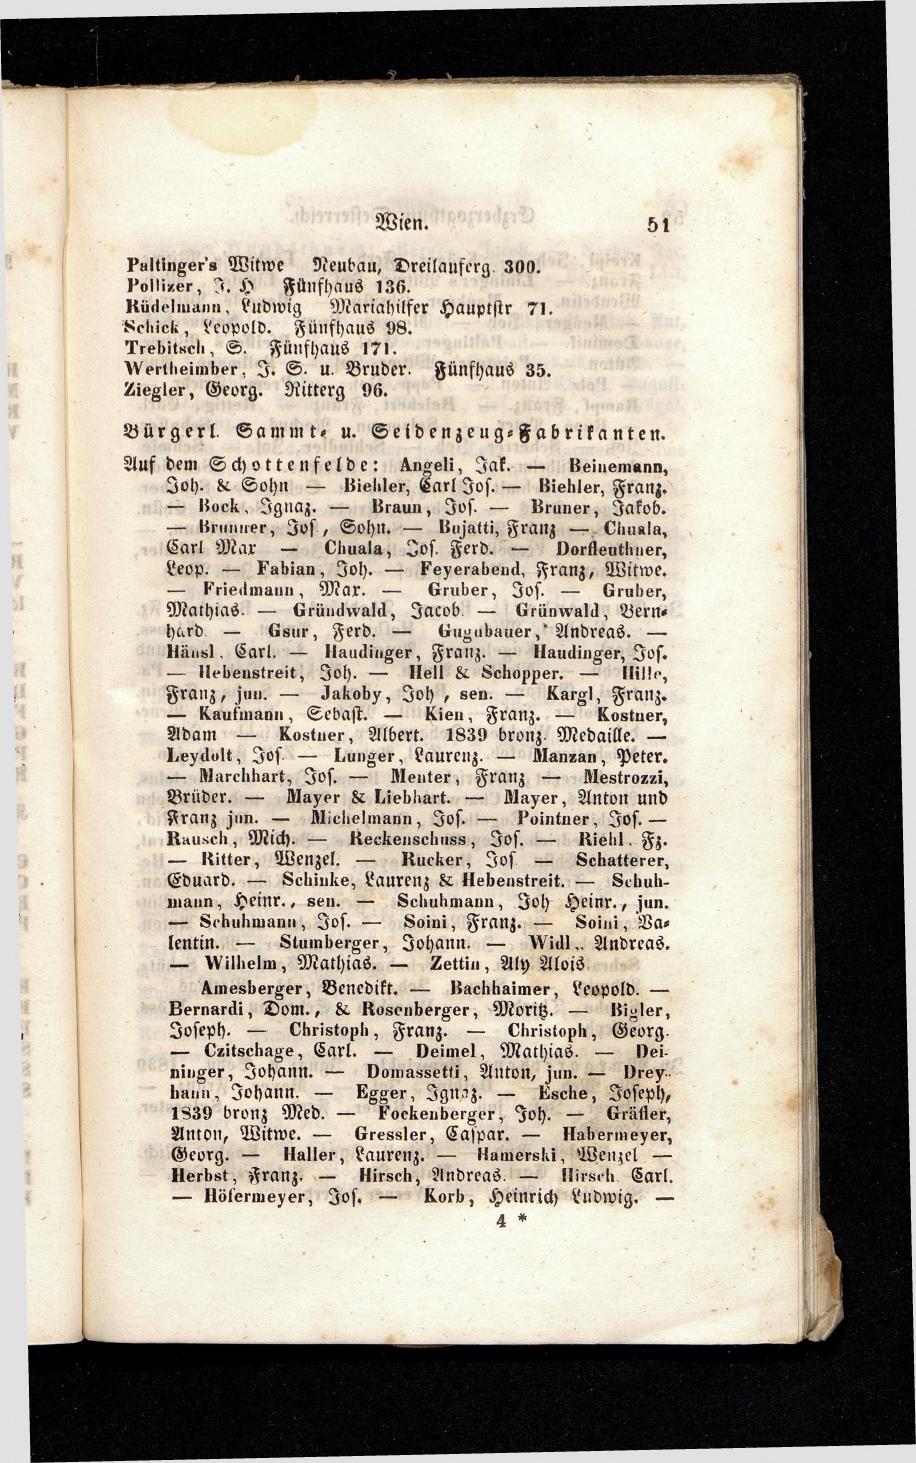 Grosses Adressbuch der Kaufleute. No. 13. Oesterreich ober u. unter der Enns 1844 - Seite 55